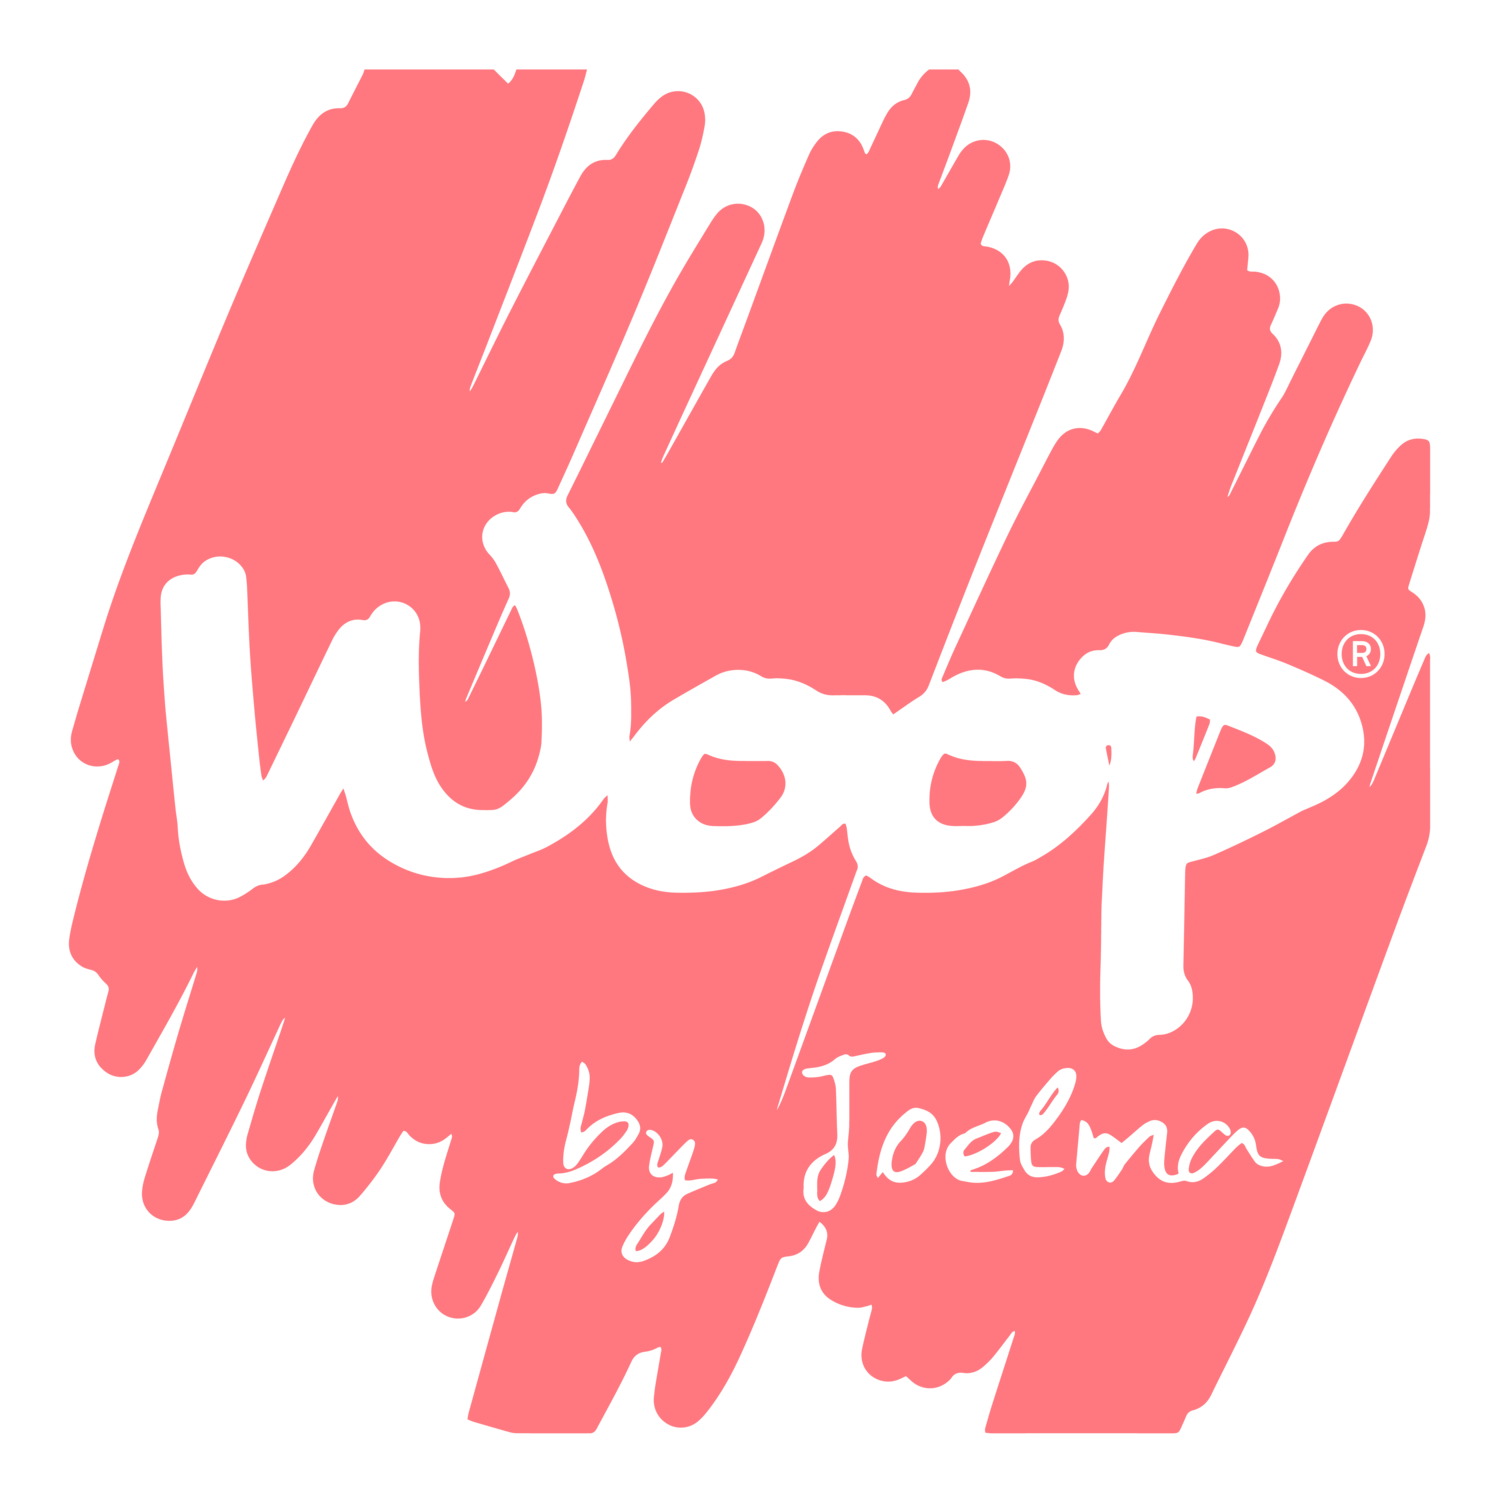 Woop by Joelma